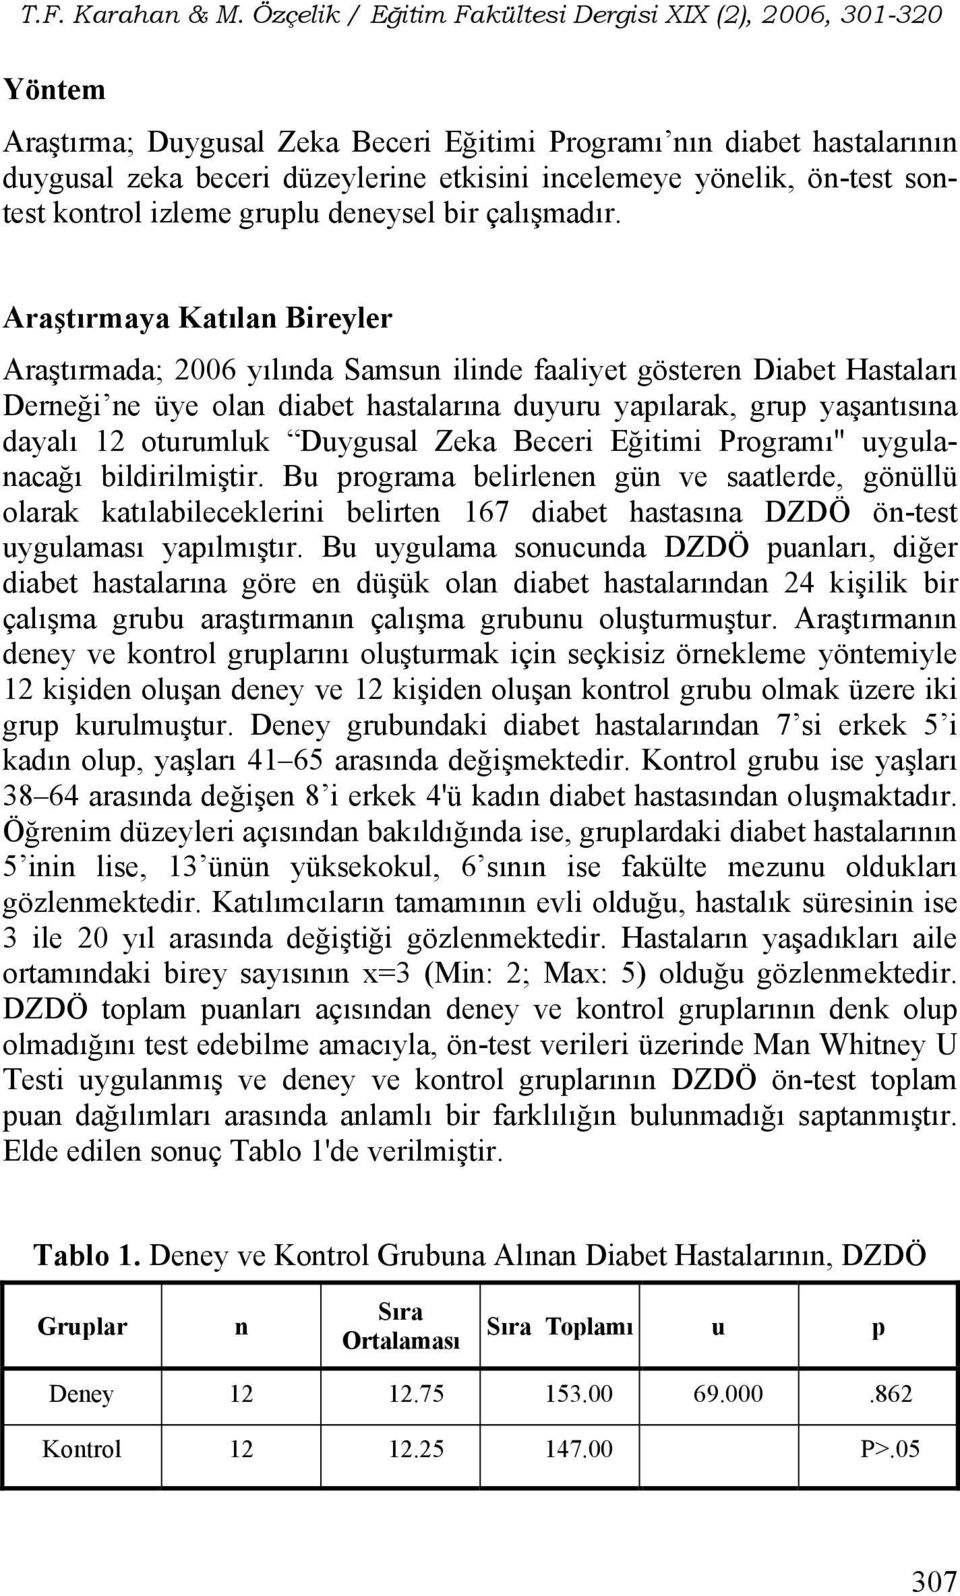 Araştırmaya Katılan Bireyler Araştırmada; 2006 yılında Samsun ilinde faaliyet gösteren Diabet Hastaları Derneği ne üye olan diabet hastalarına duyuru yapılarak, grup yaşantısına dayalı 12 oturumluk